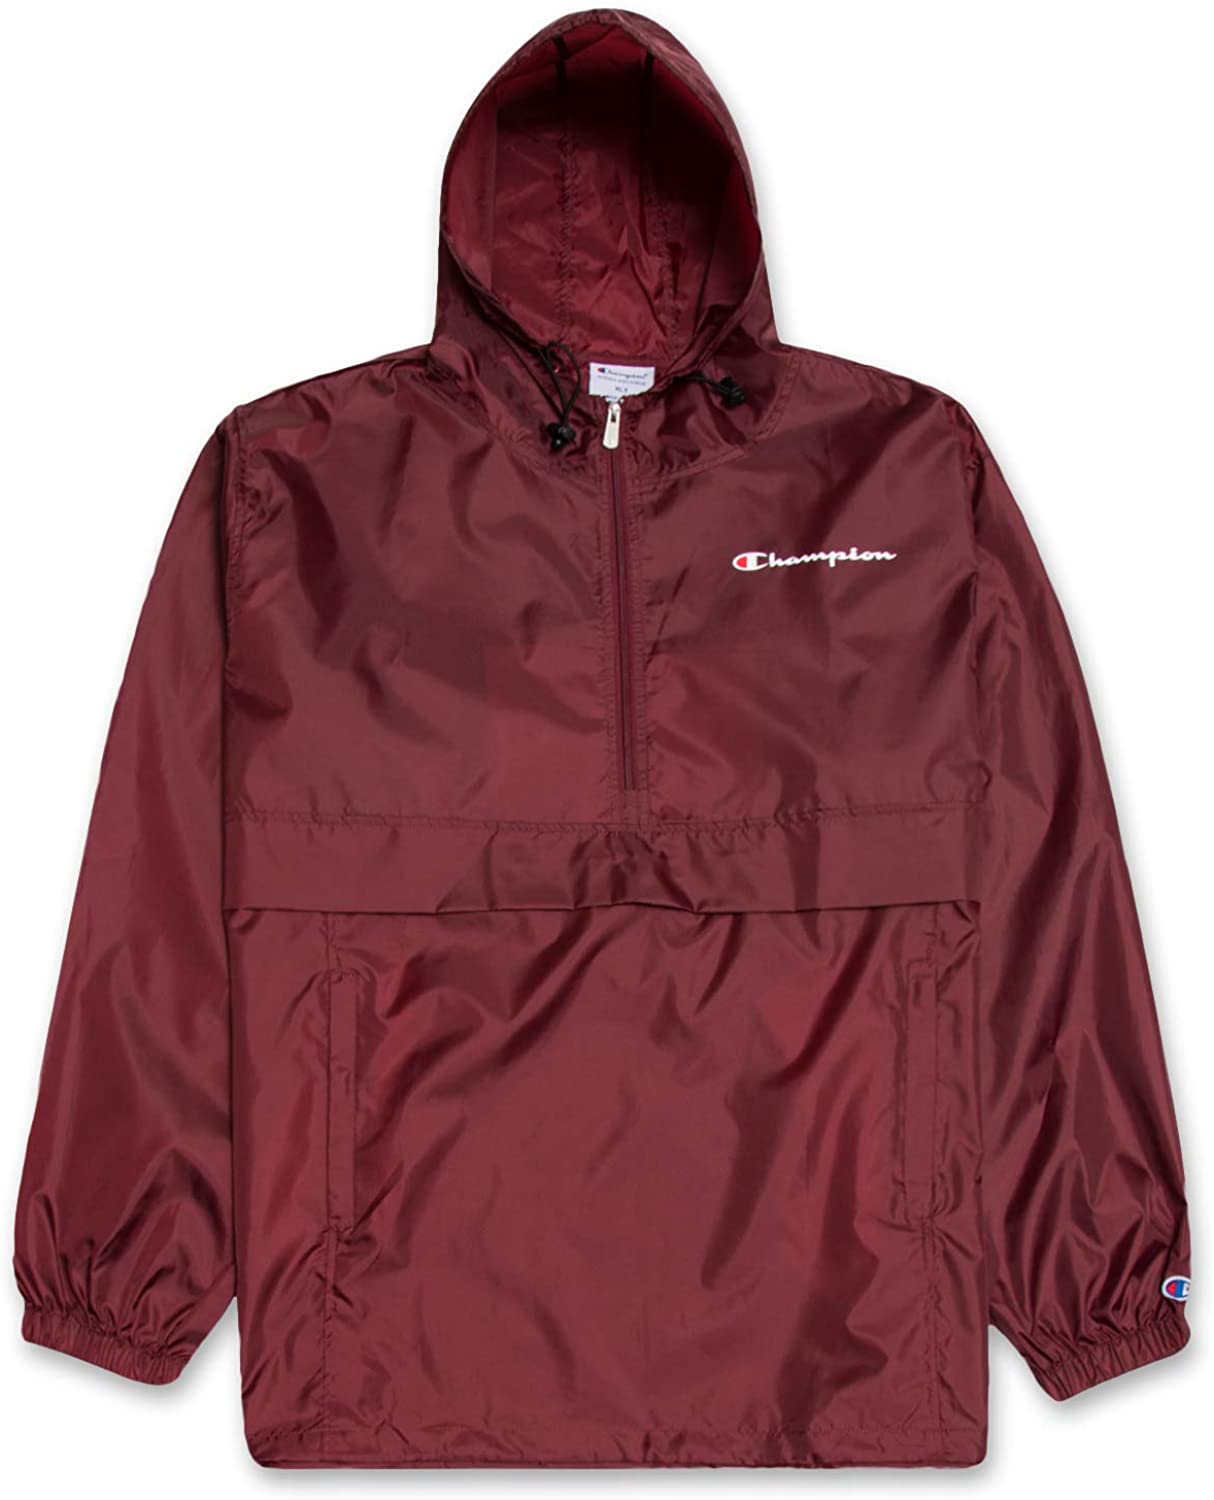 Champion hooded Jacket señores outdoor chaqueta capucha invierno chaqueta 214869-kl001 